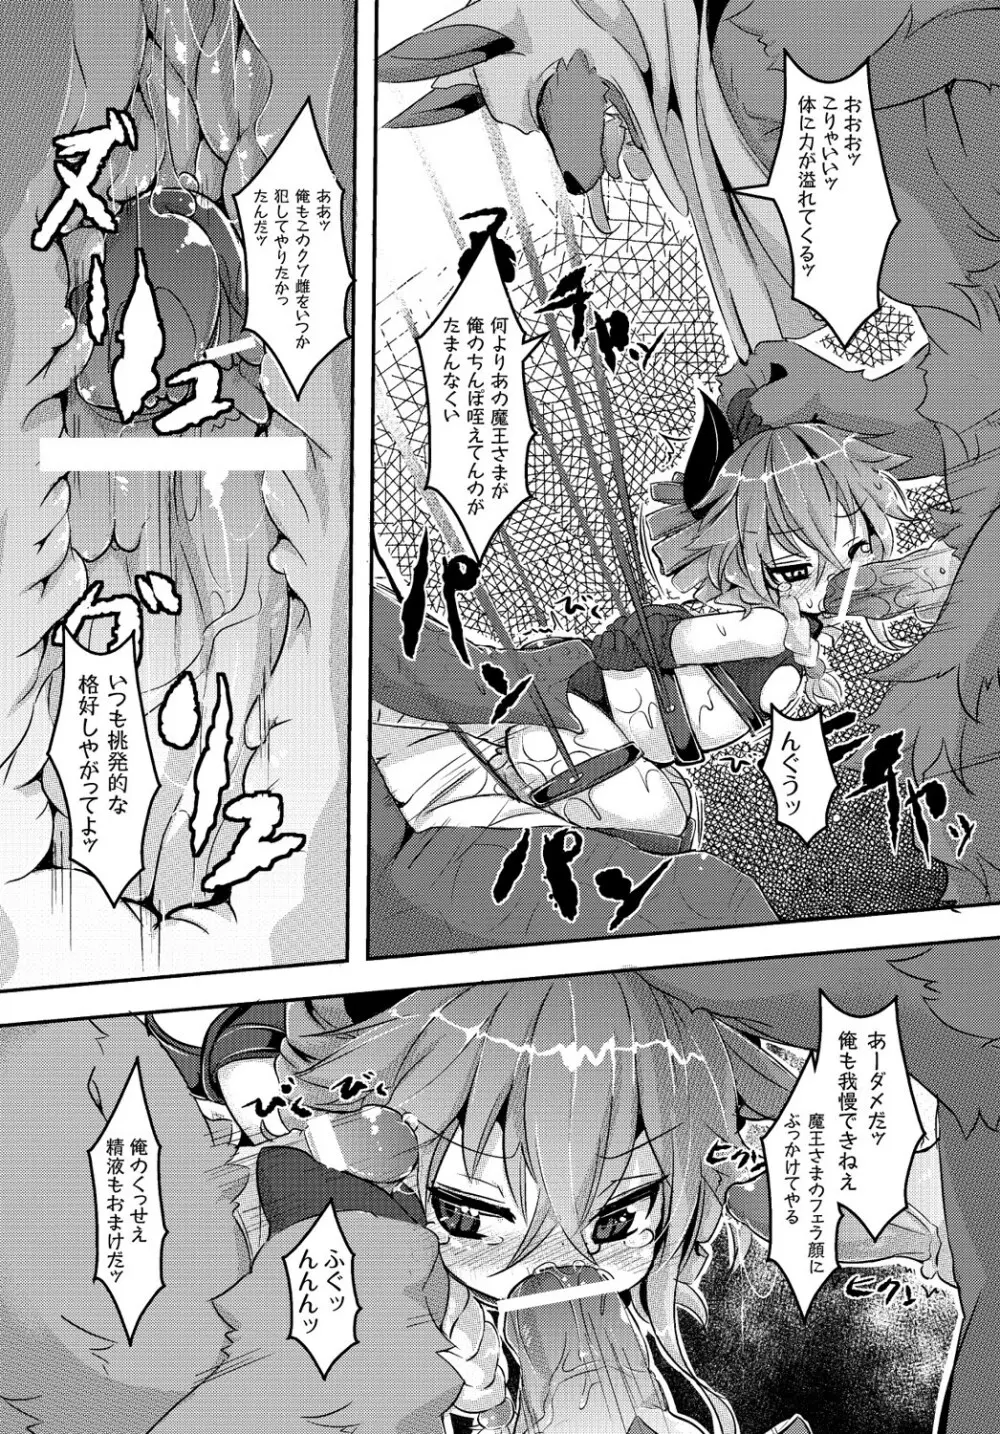 マニ・フェチ美少女コミックス PLUM DX 13 39ページ